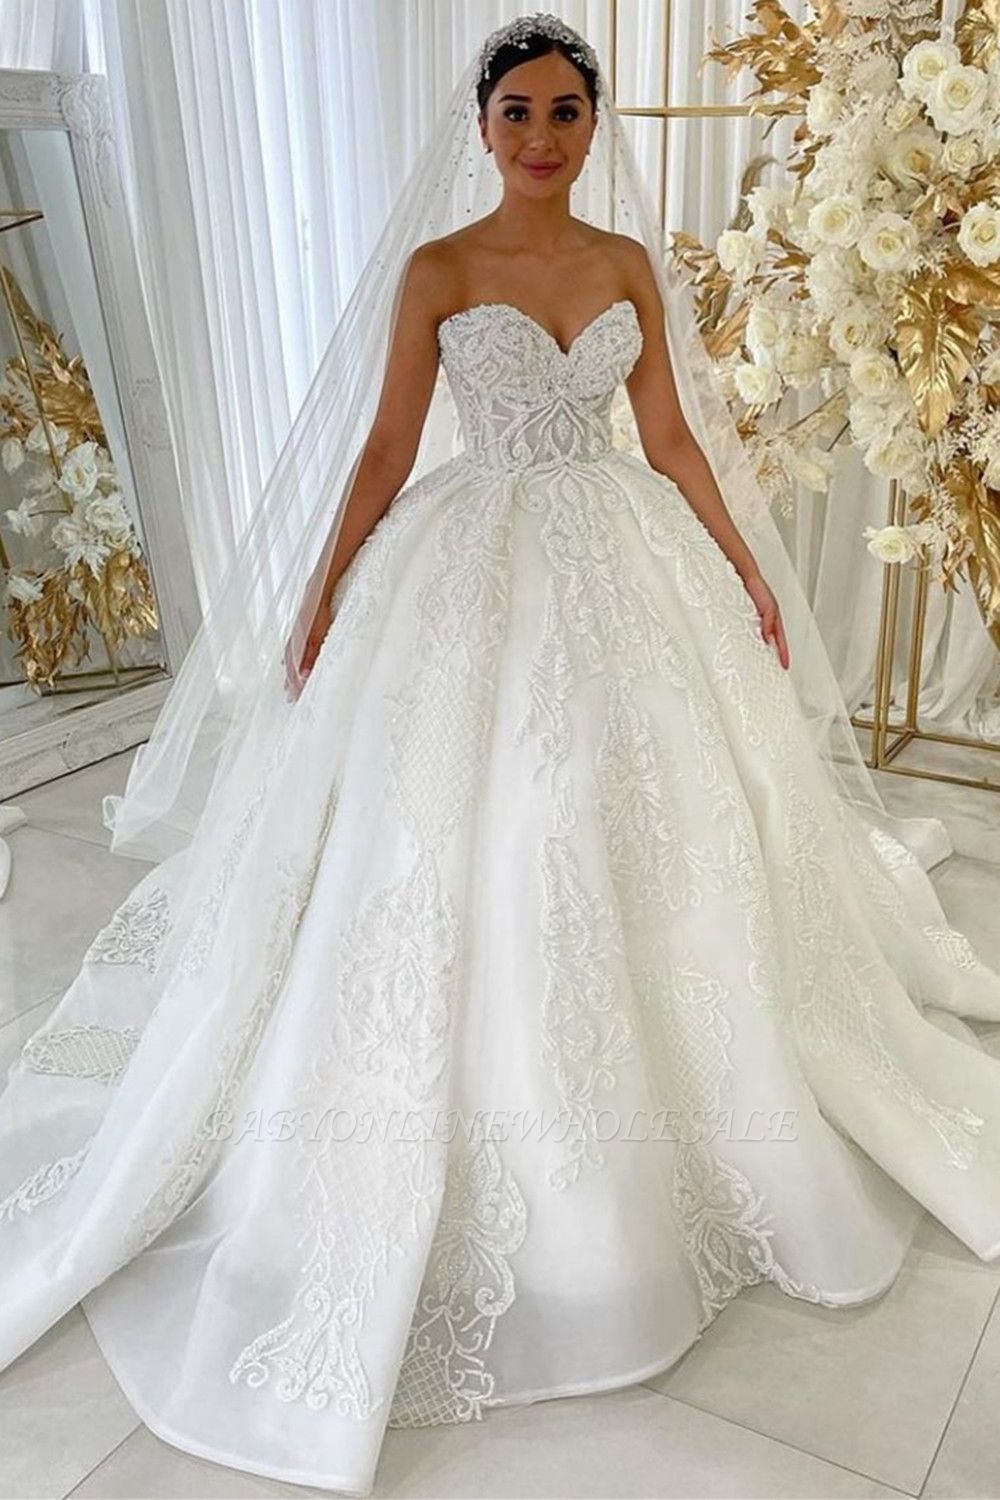 Милая принцесса трапеция свадебные платья сад кружева аппликации платье для невесты